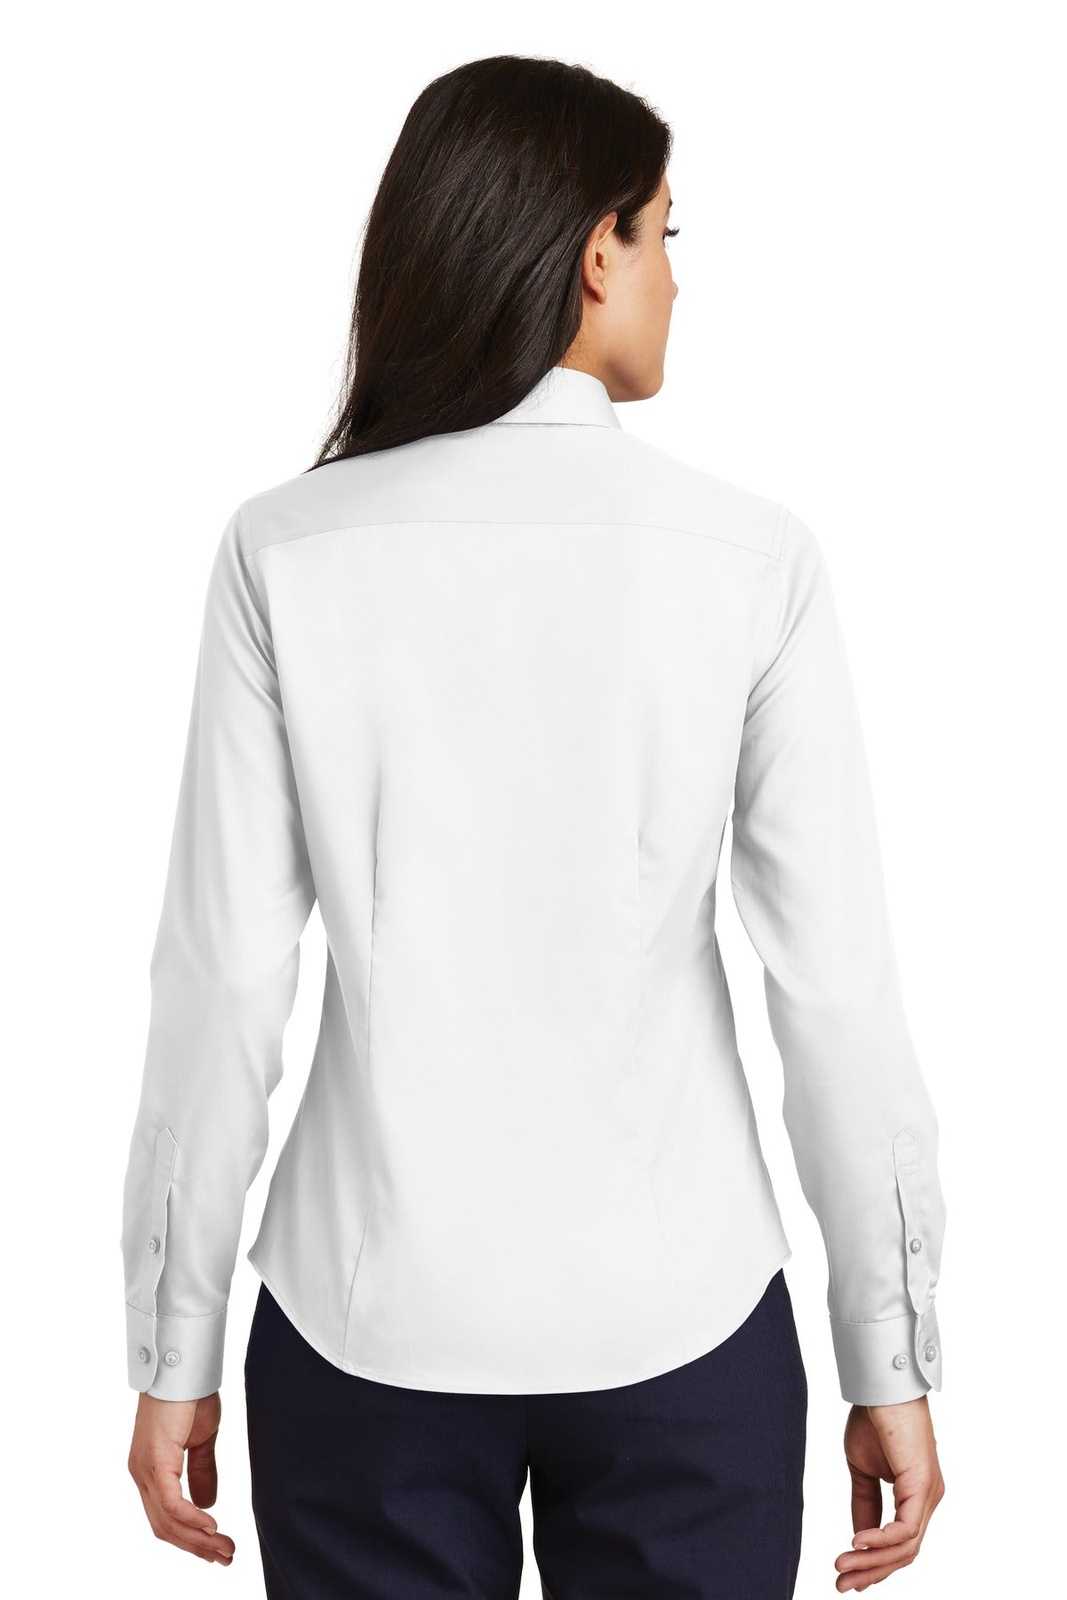 Port Authority L638 Ladies Non-Iron Twill Shirt - White - HIT a Double - 2